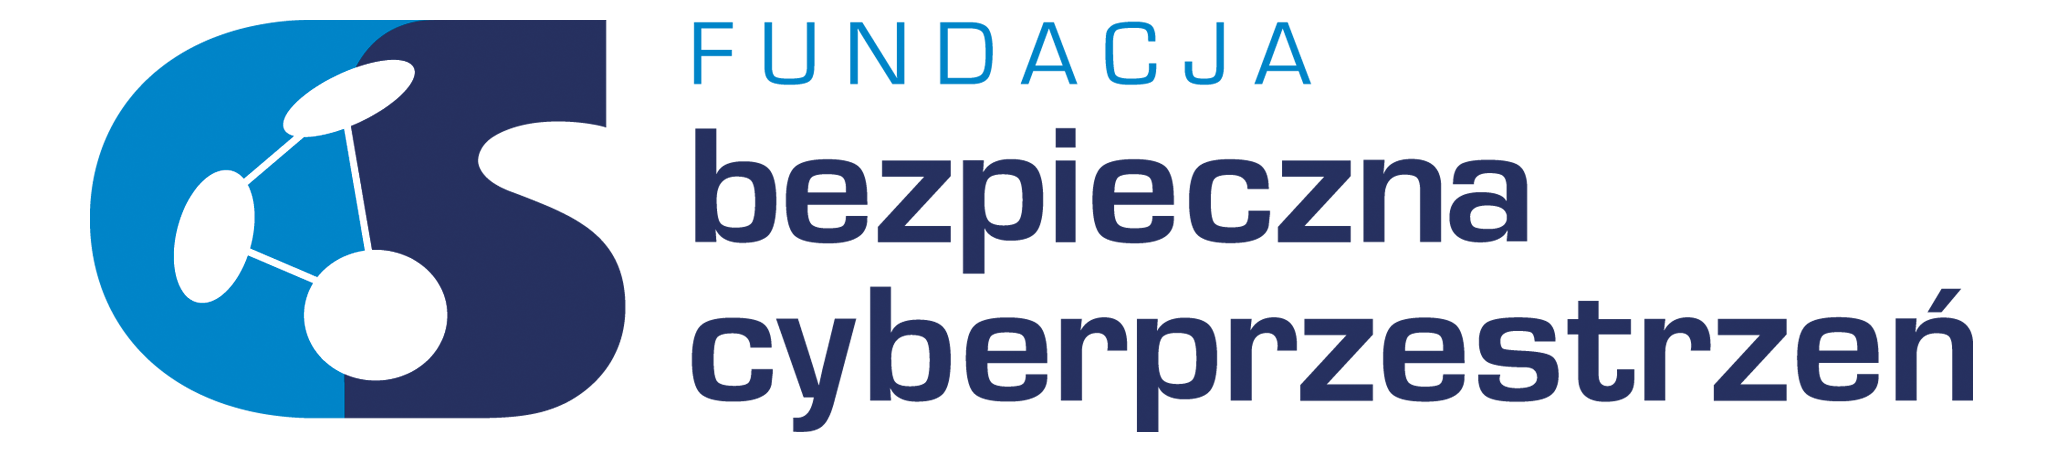 Fundacja Bezpieczna Cyberprzestrzeń